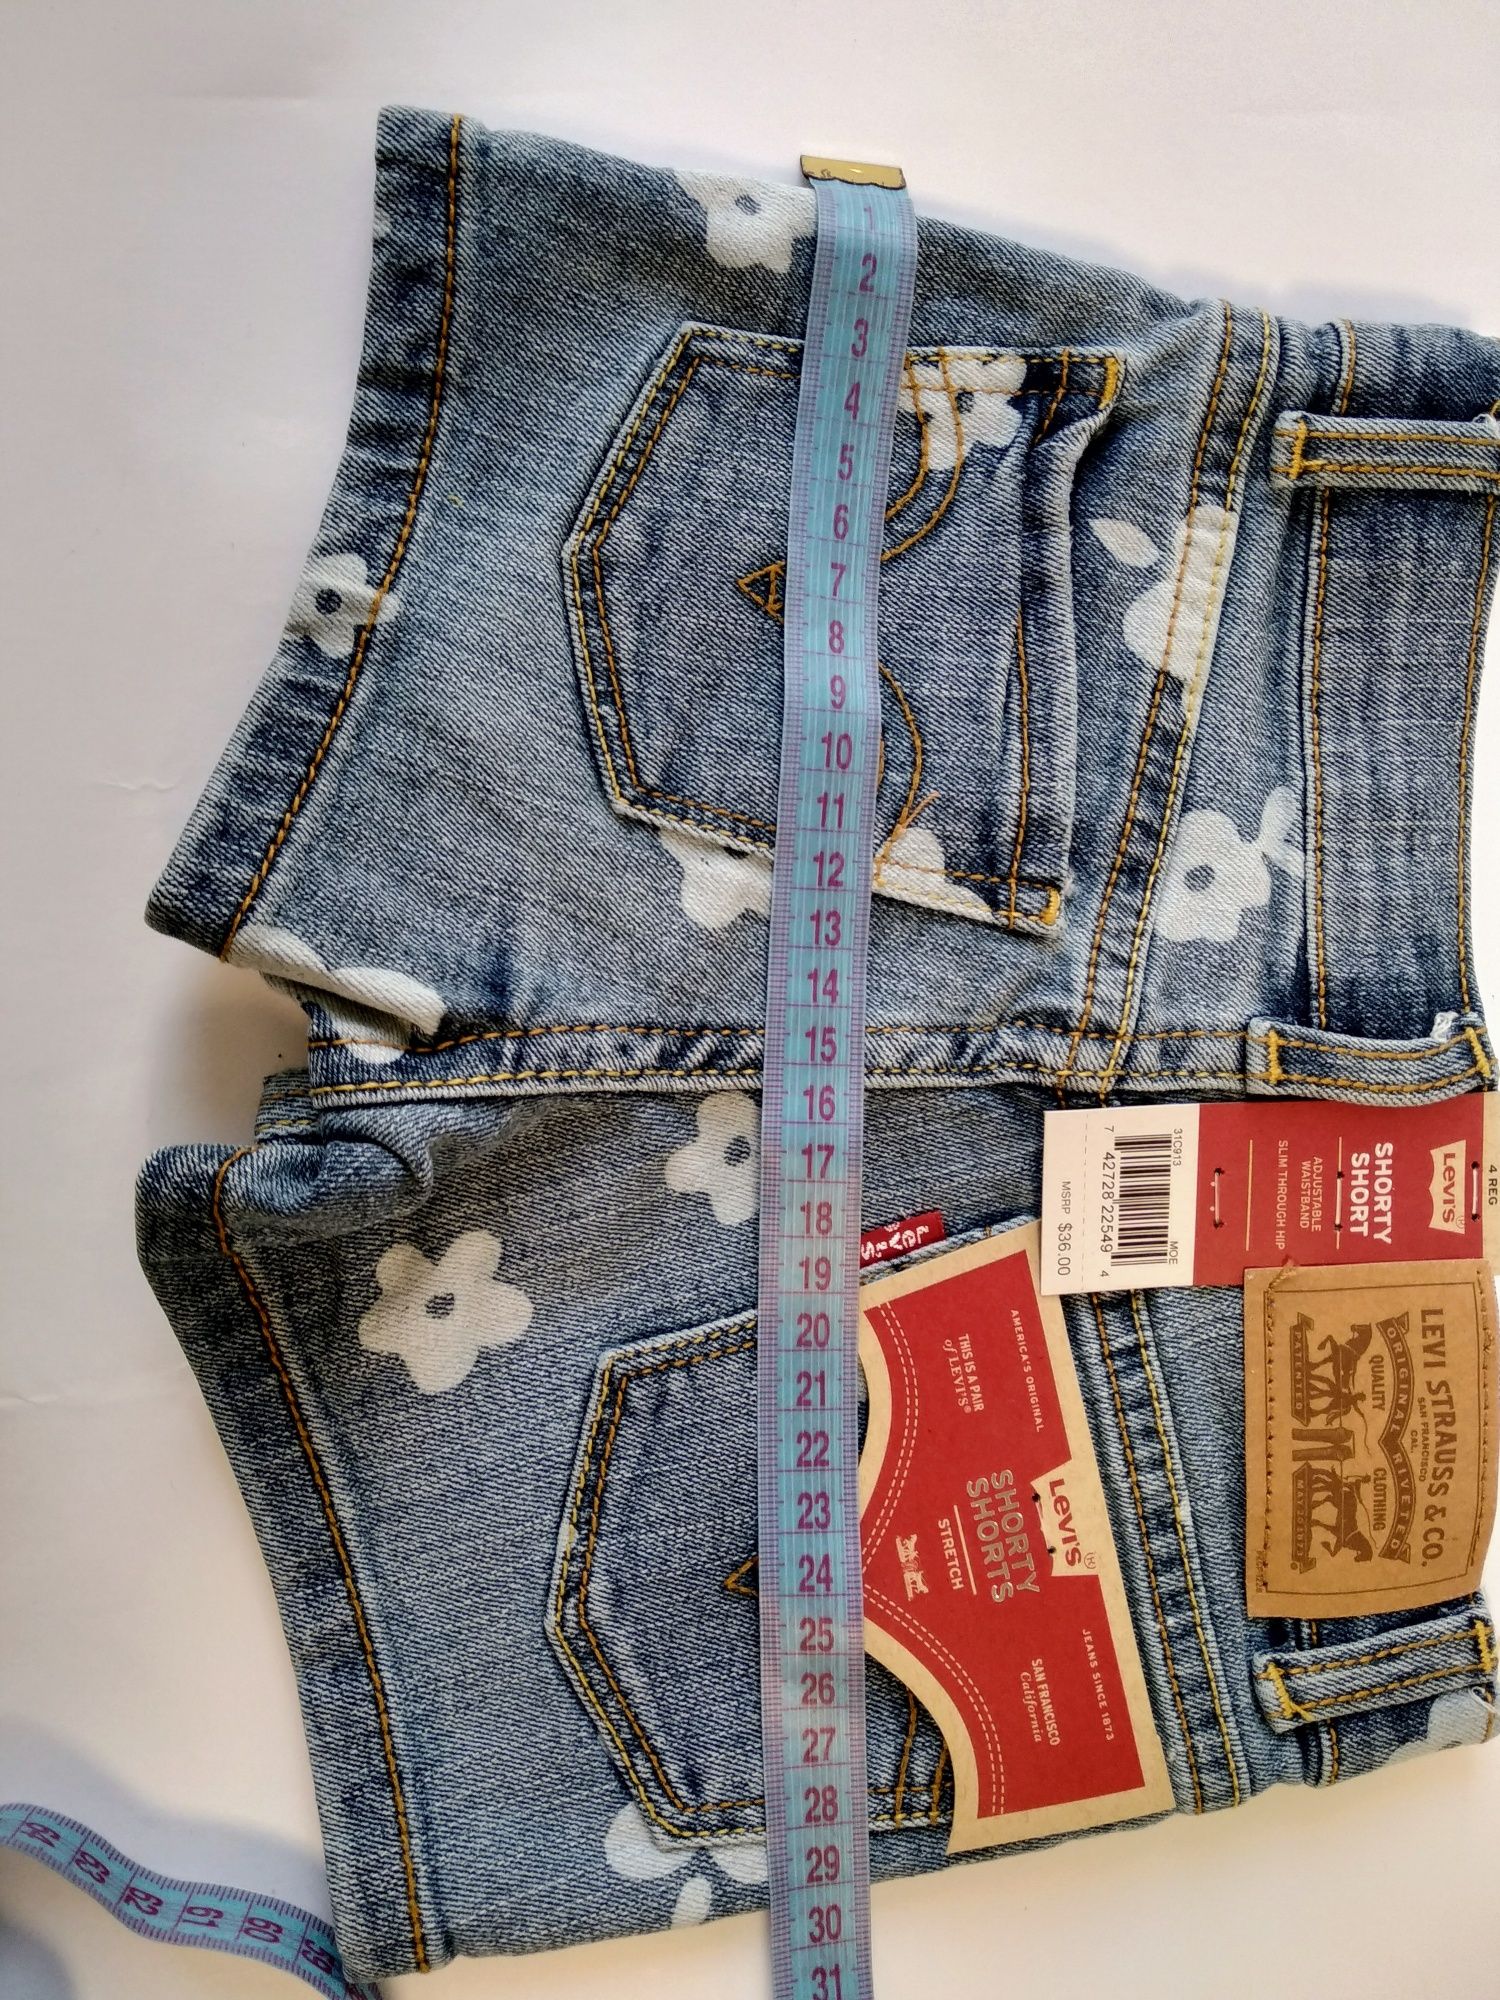 Levi's оригінал джинсові шорти 98-104